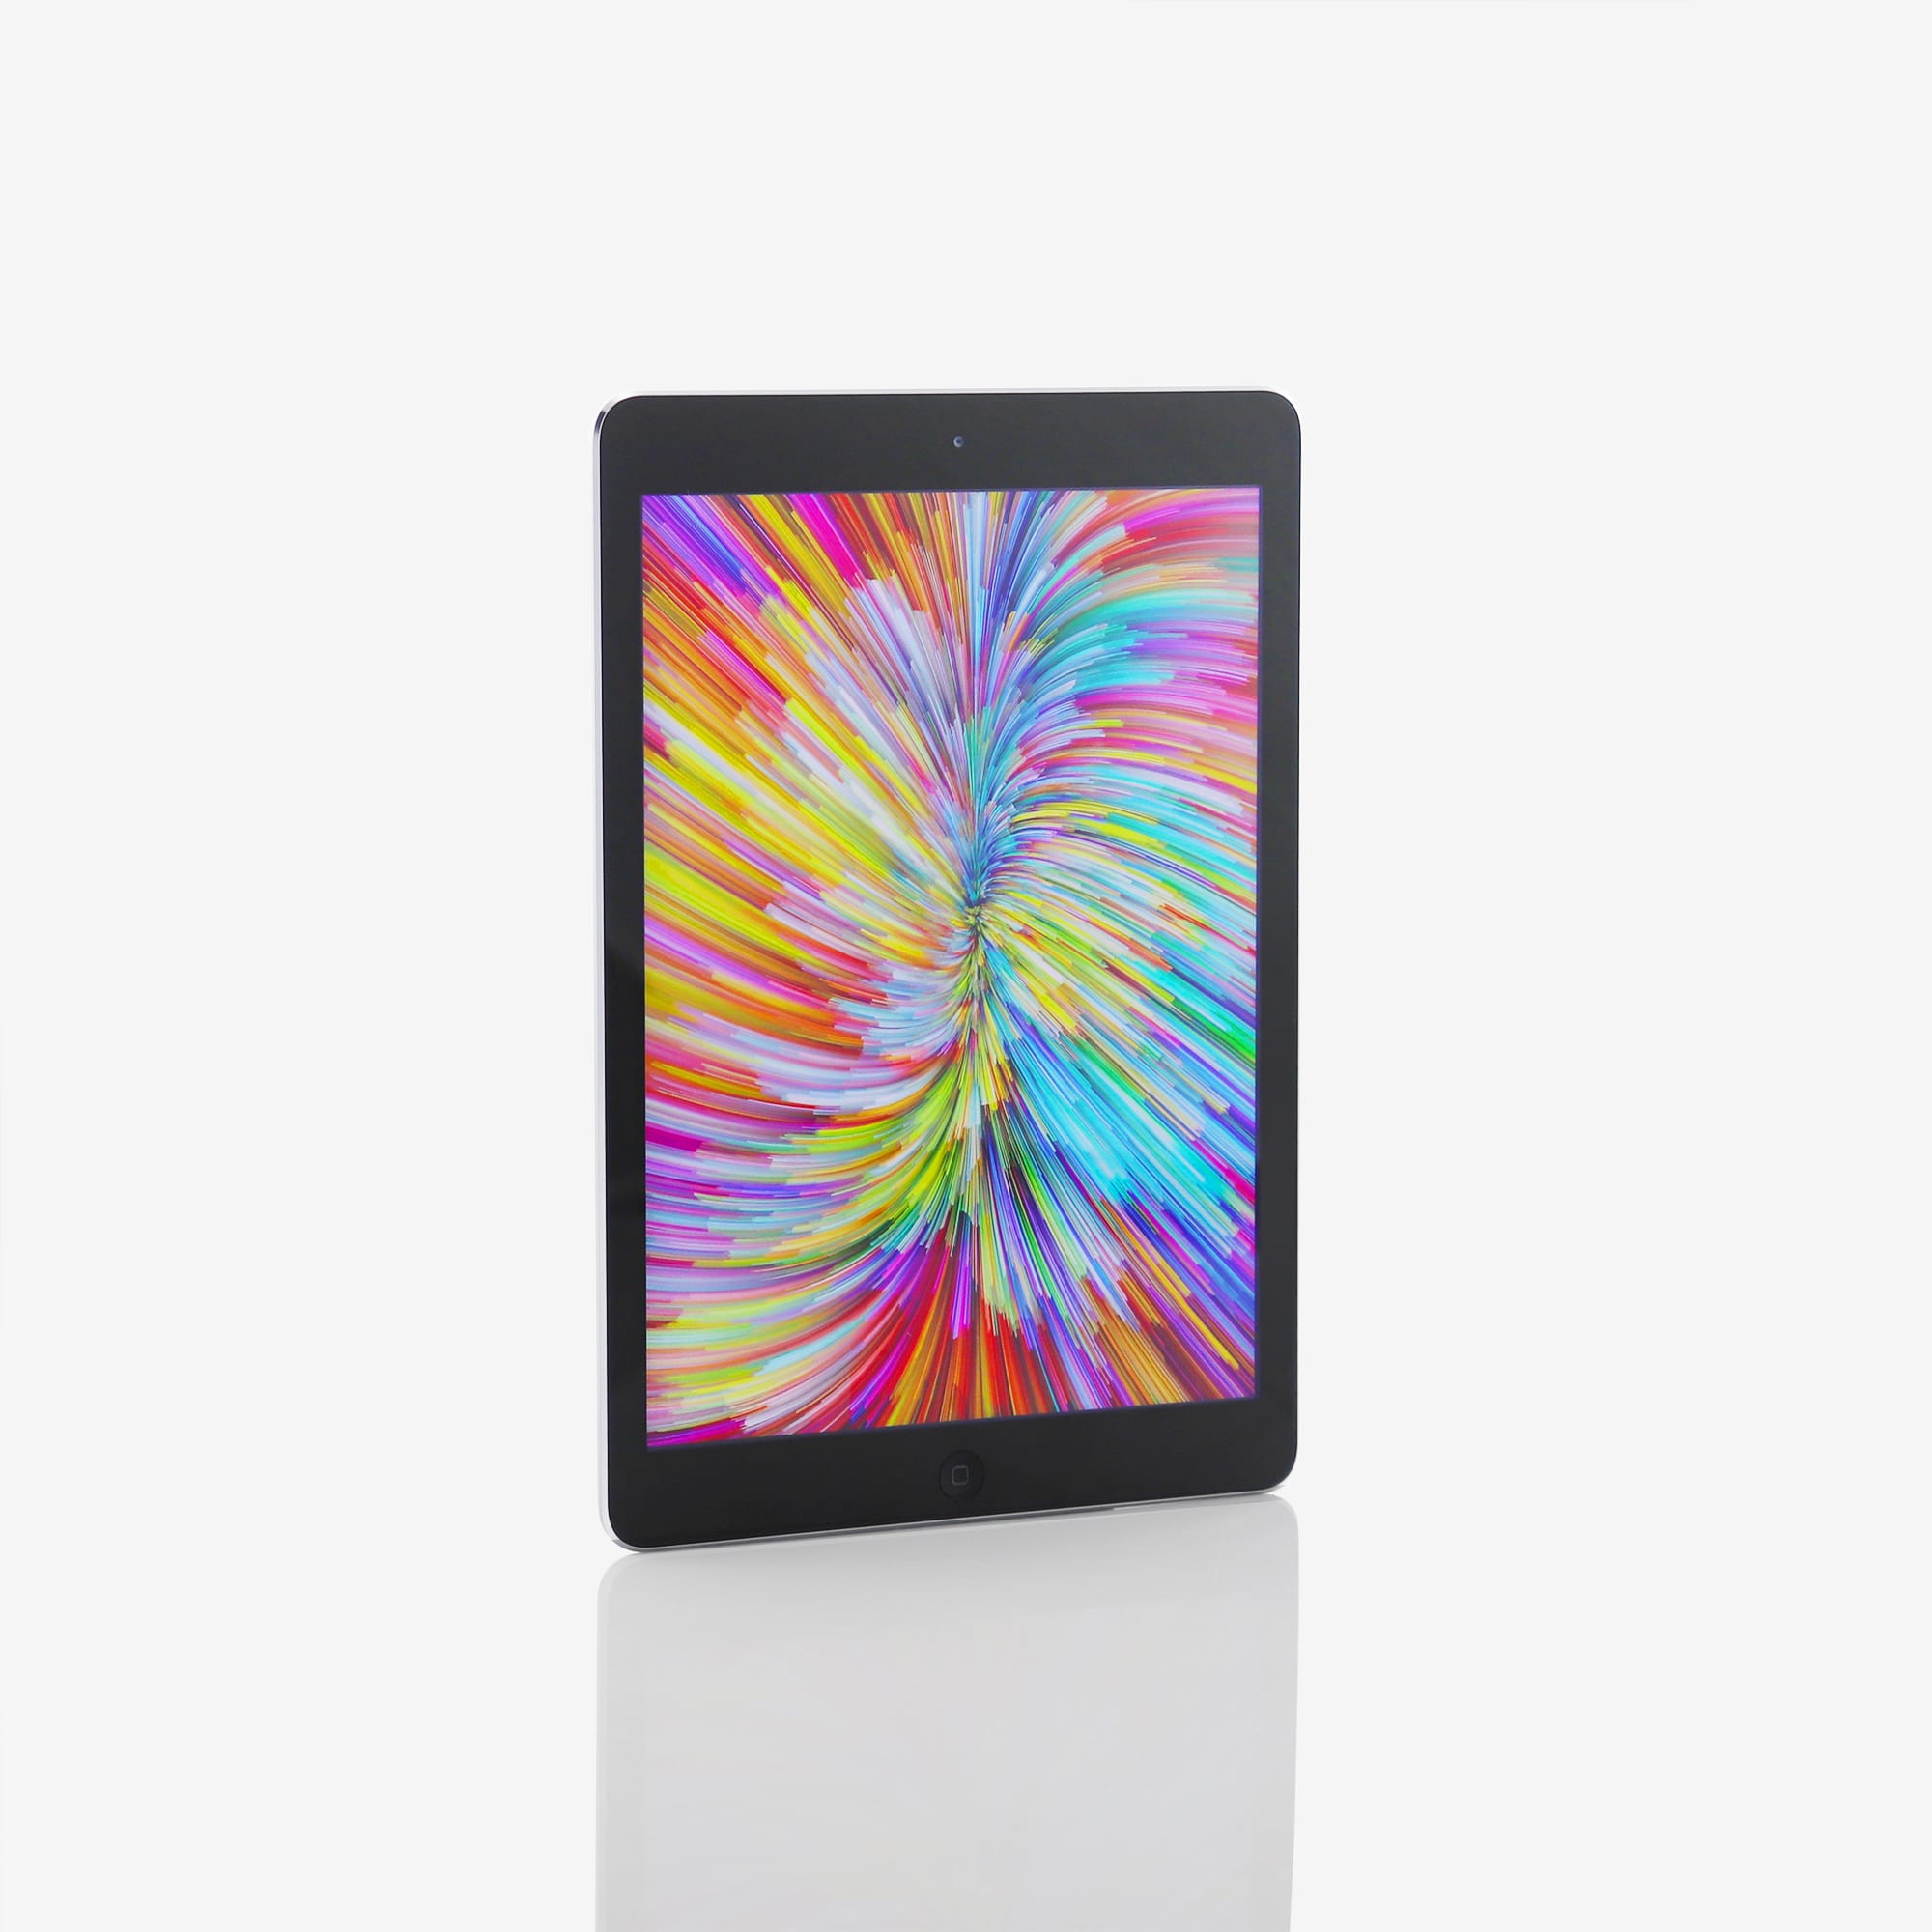 1 x iPad Air (Wi-Fi) Black